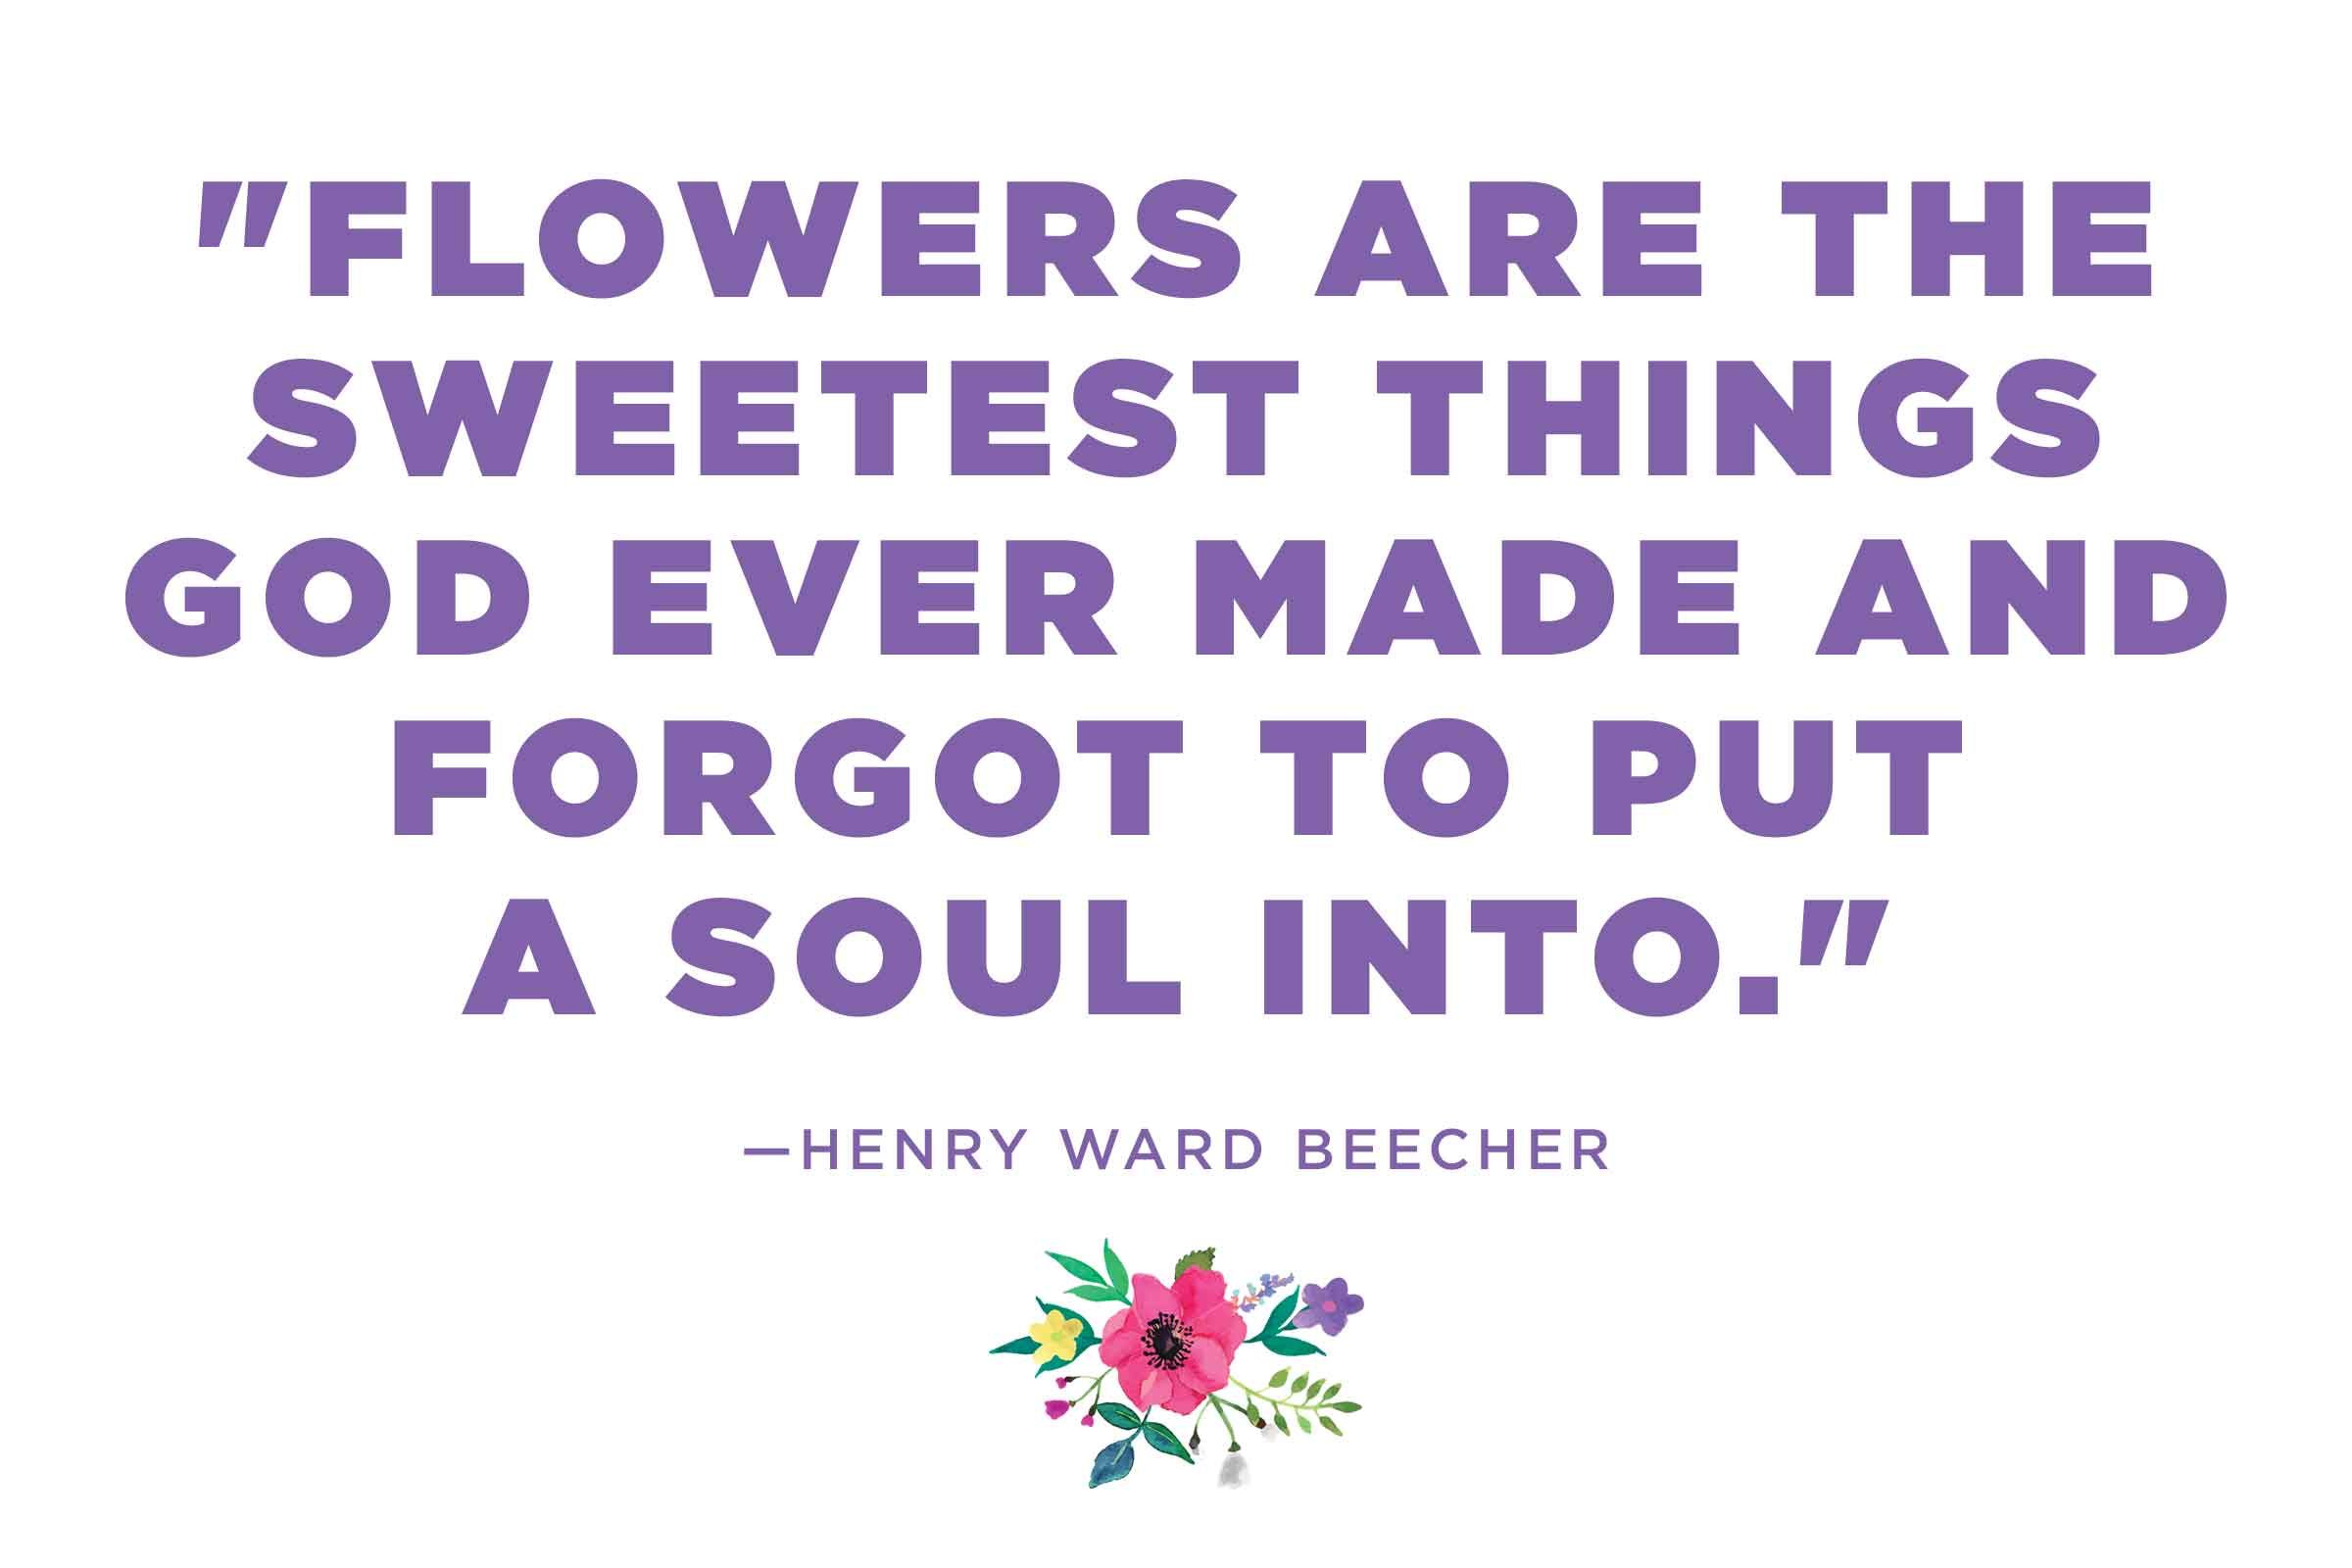 Henry Ward Beecher on God's gardening